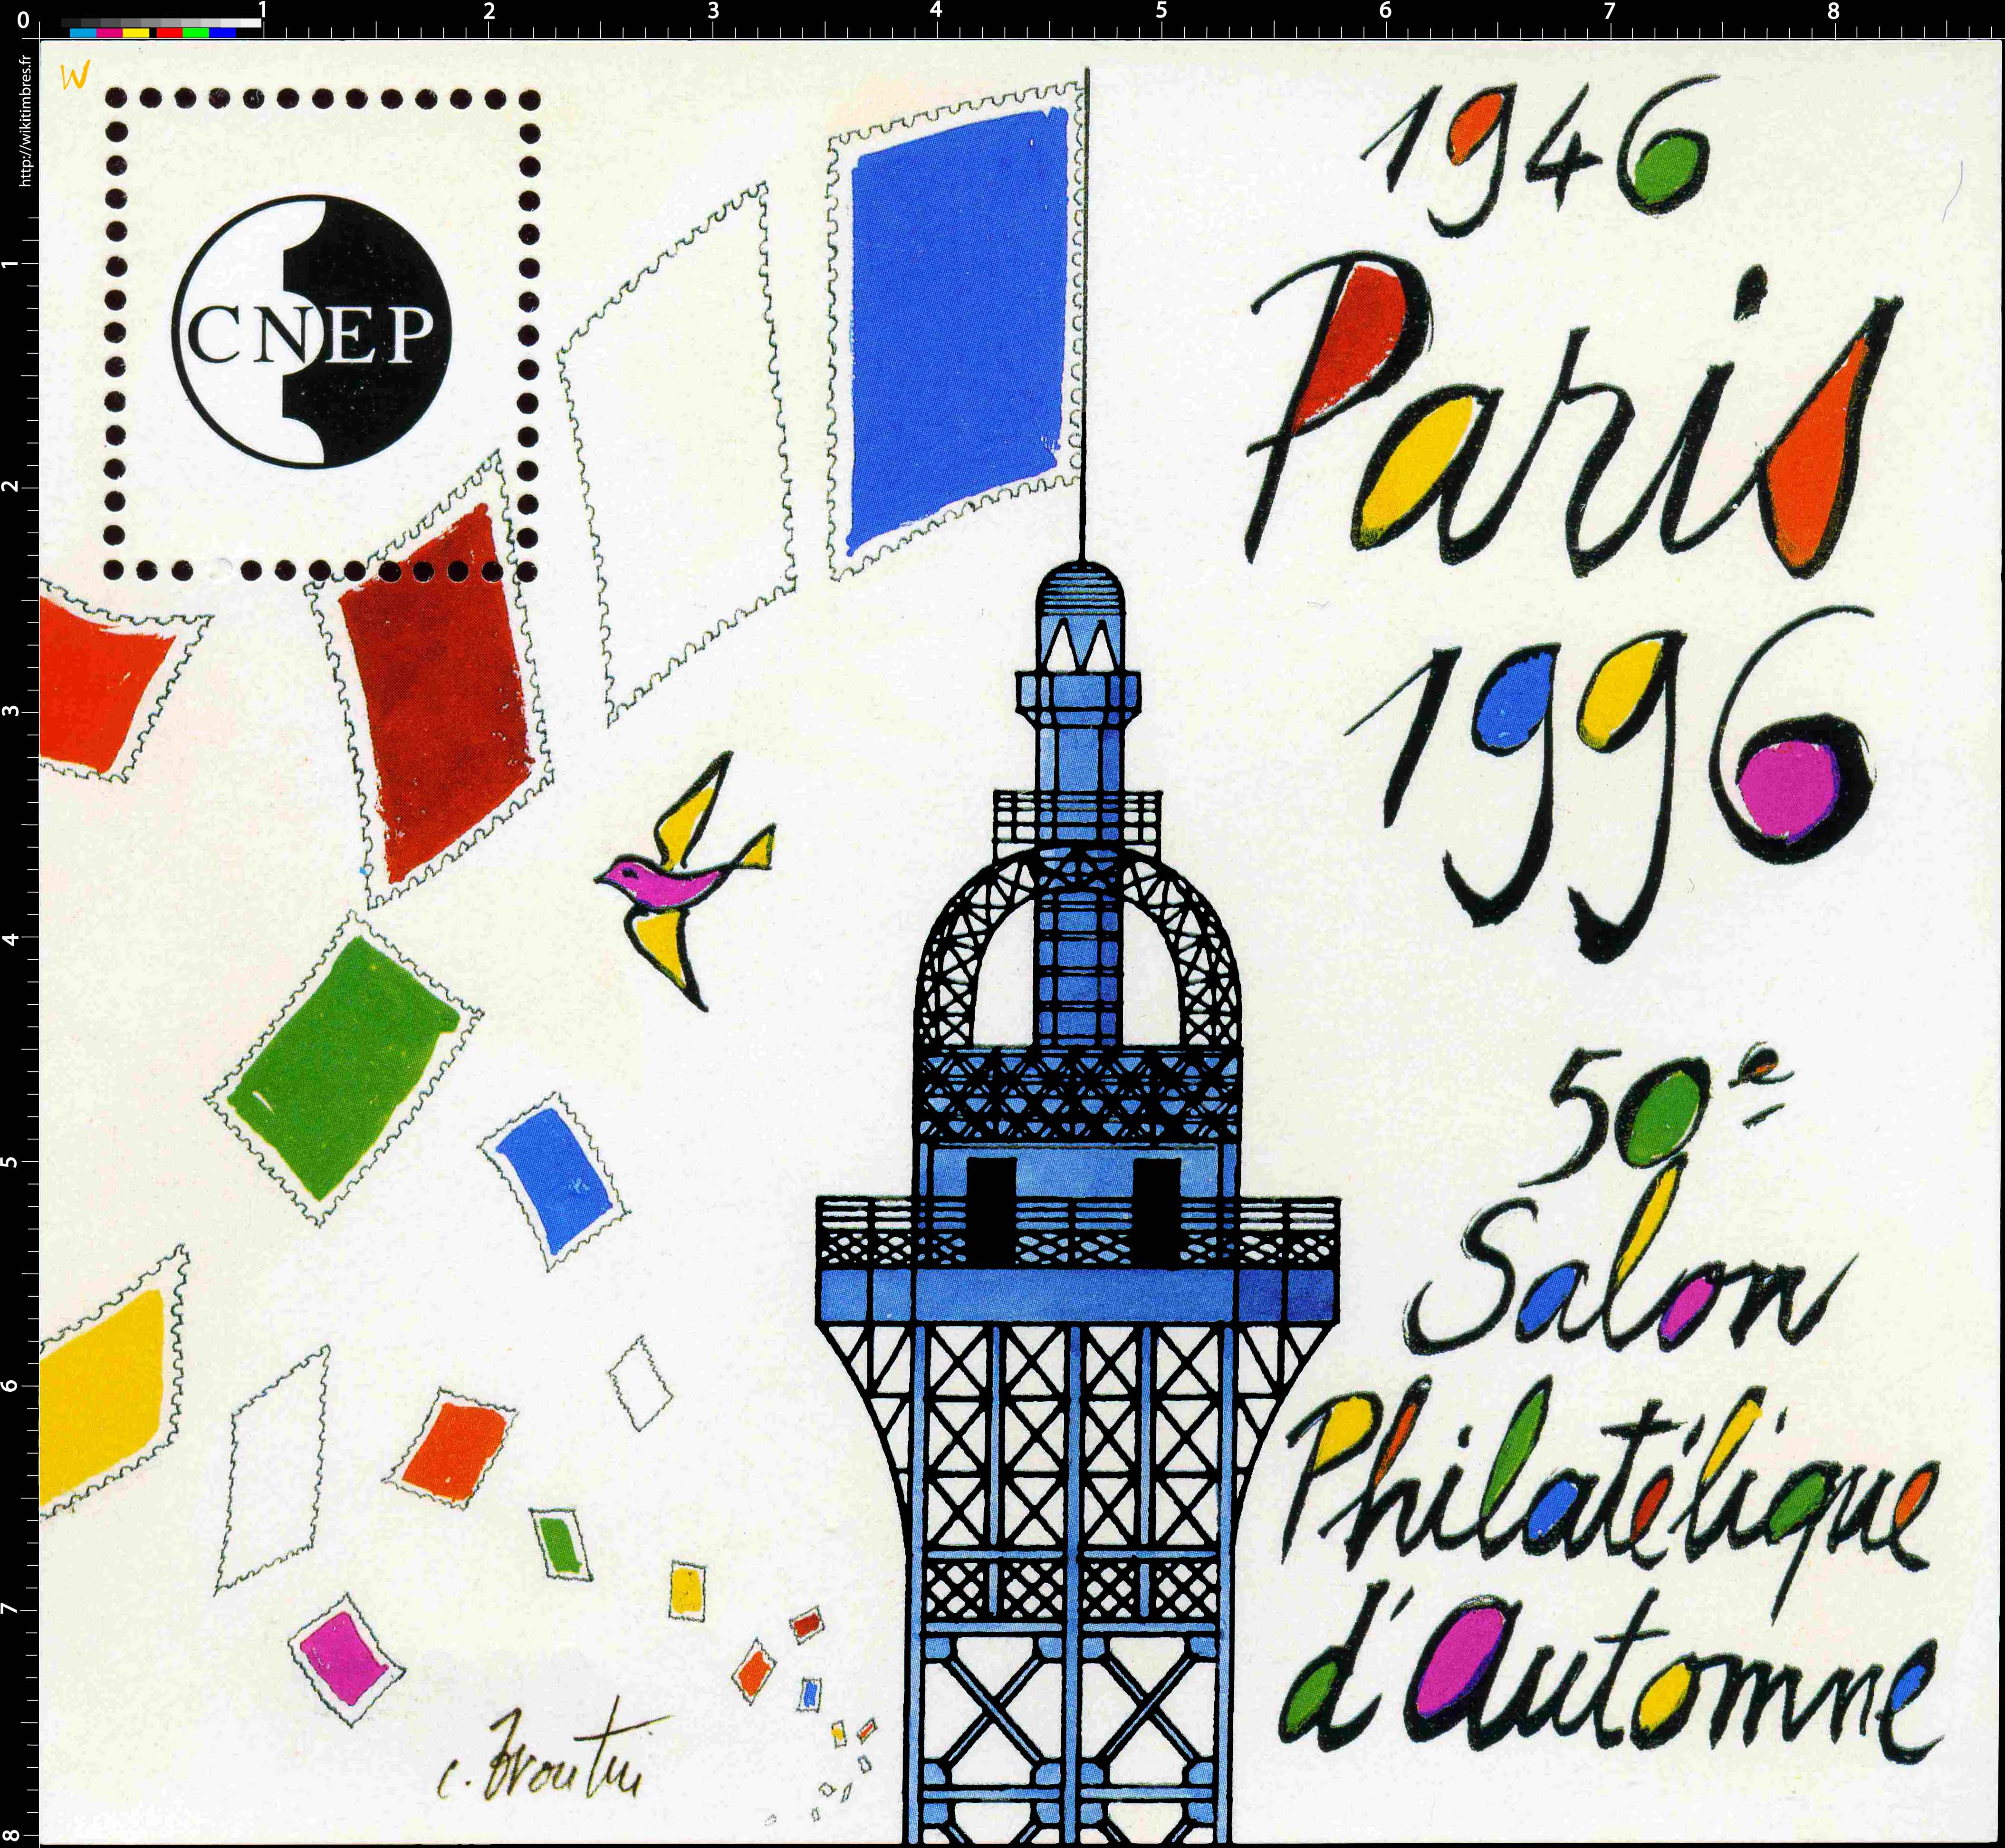 1946 1996 50e Salon philatélique d'automne Paris CNEP